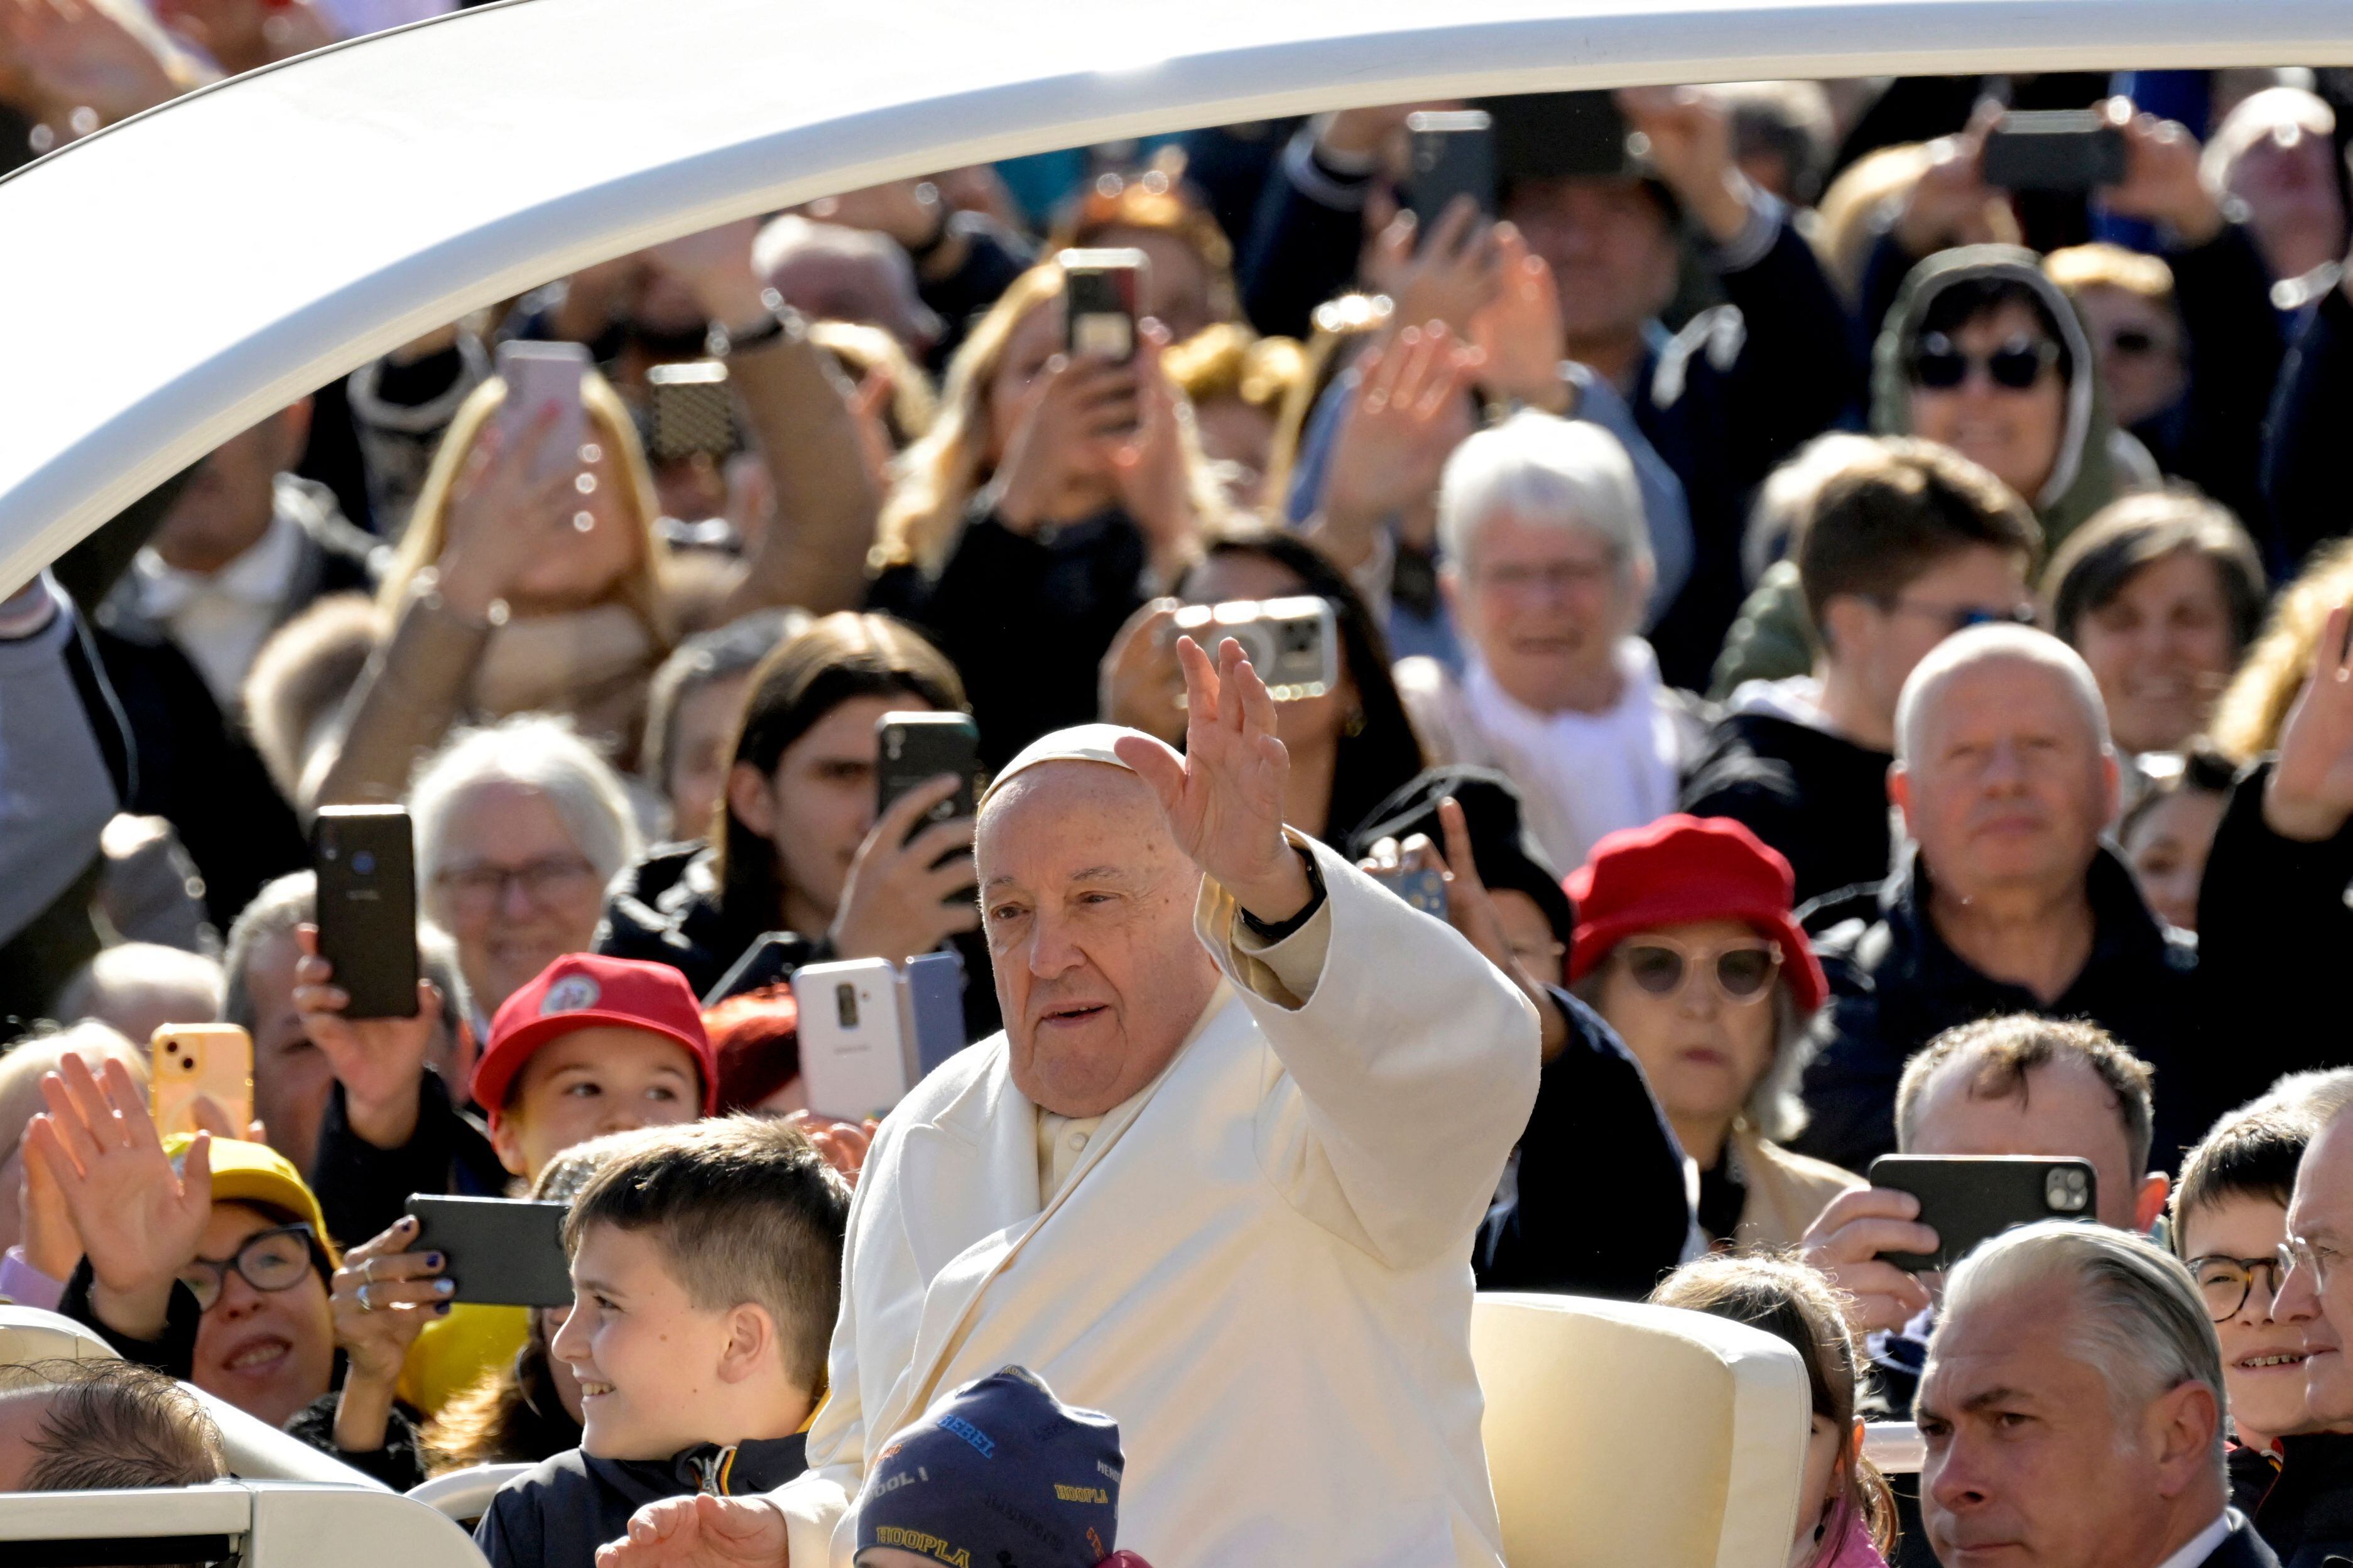 El papa Francisco se presentó en Venecia, Italia, ante una multitud de 10.000 fieles para presidir una misa este domingo.